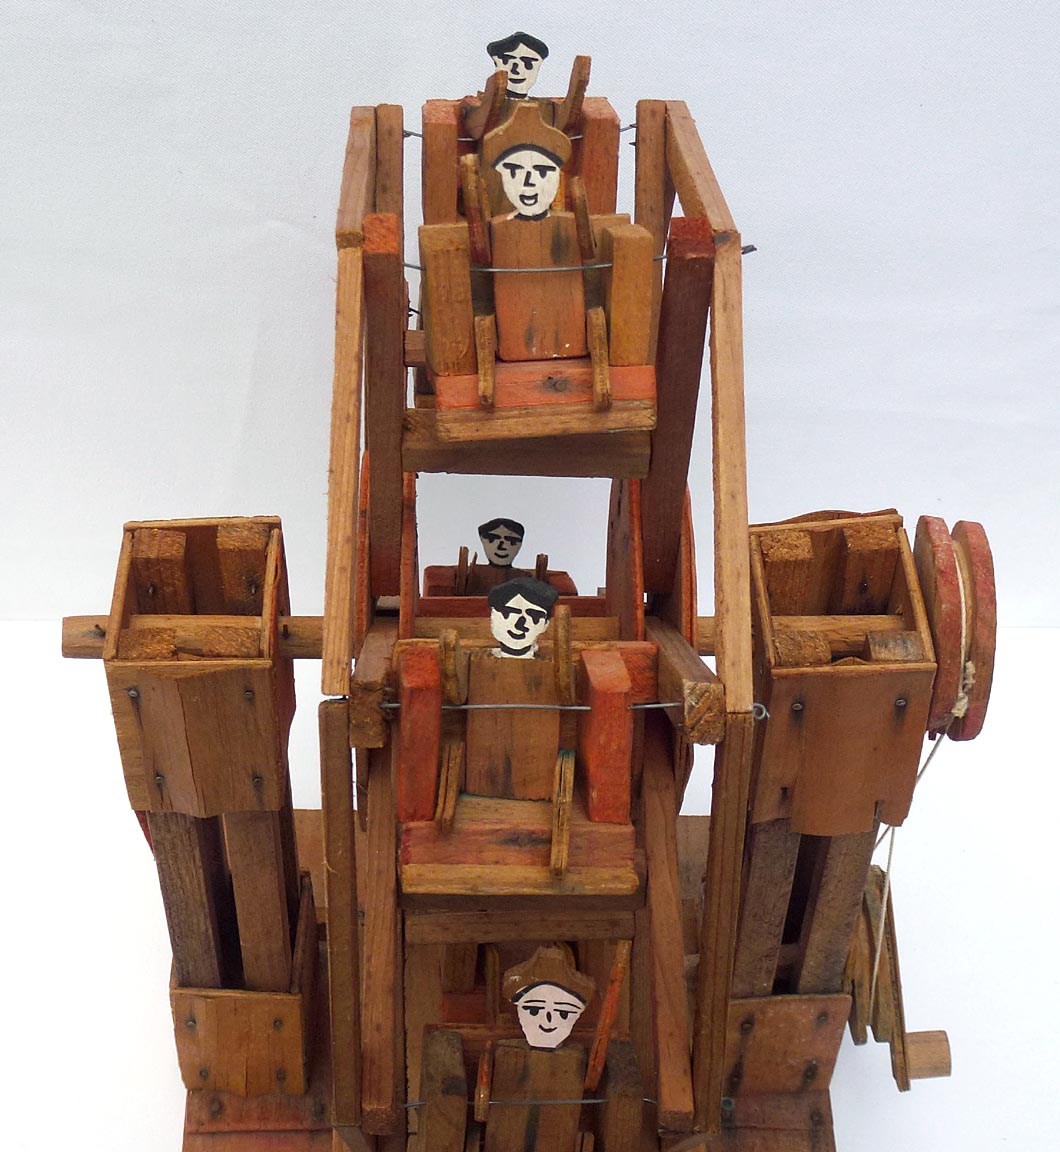 Folk art model Ferris wheel